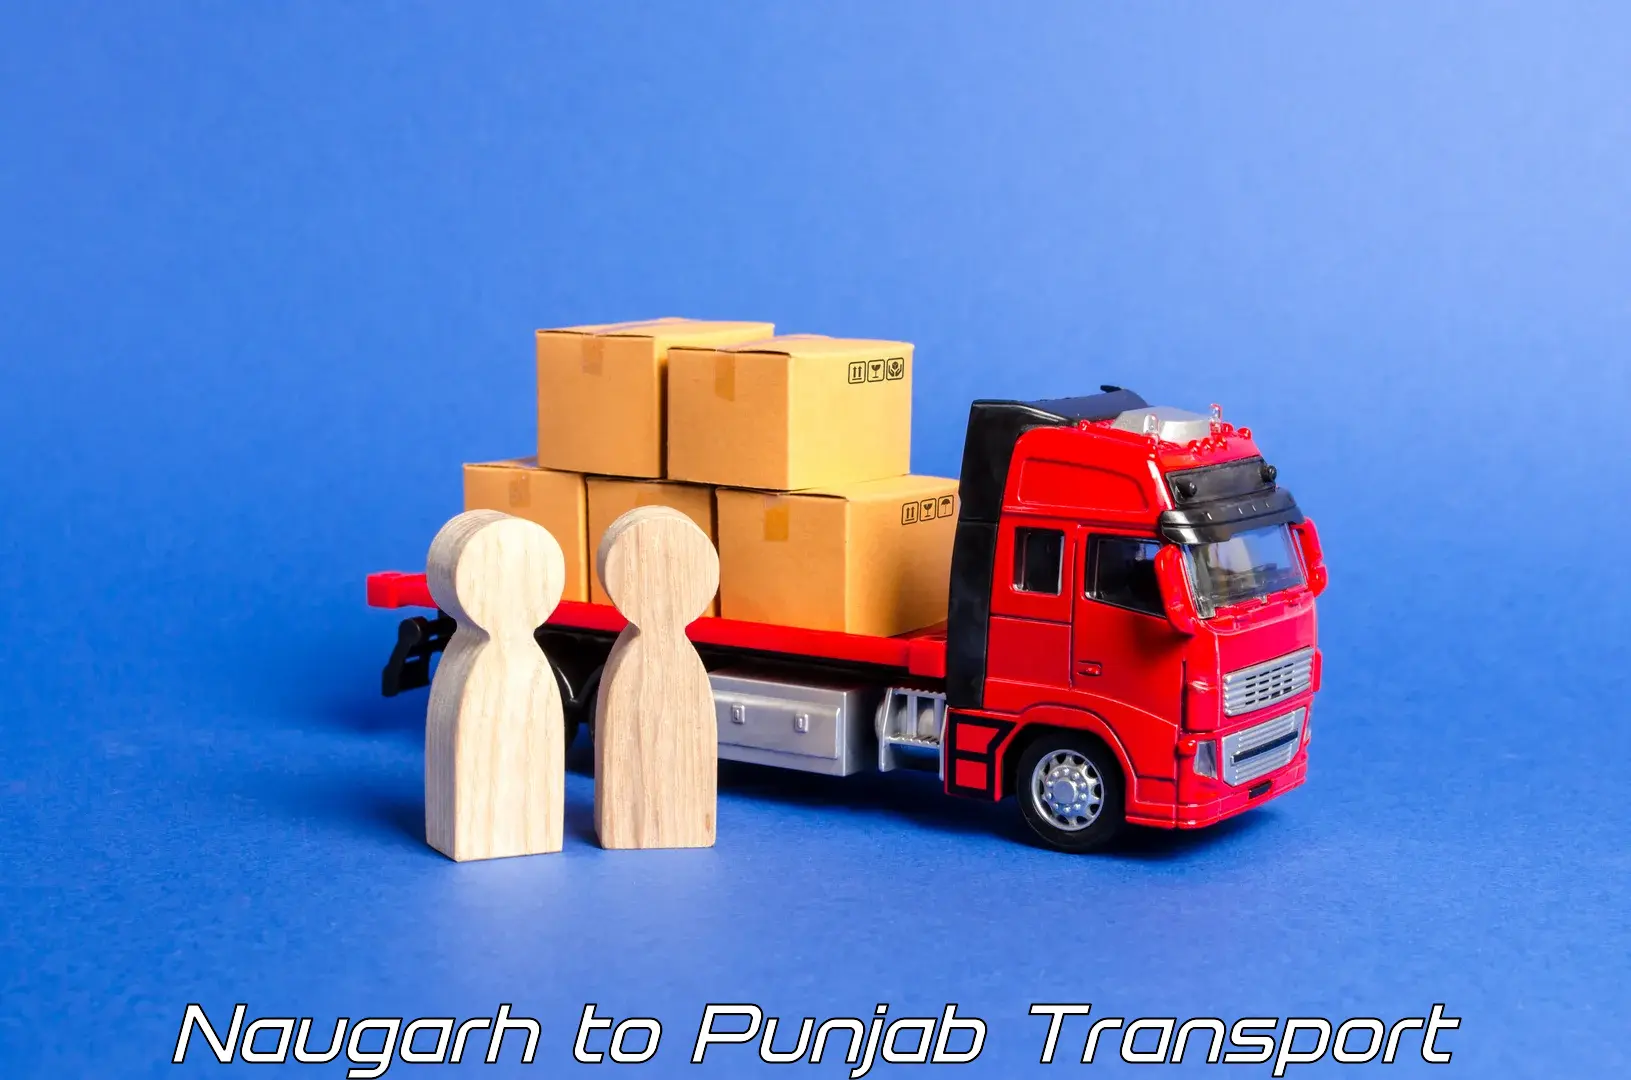 Daily transport service Naugarh to Patti Tarn Tara